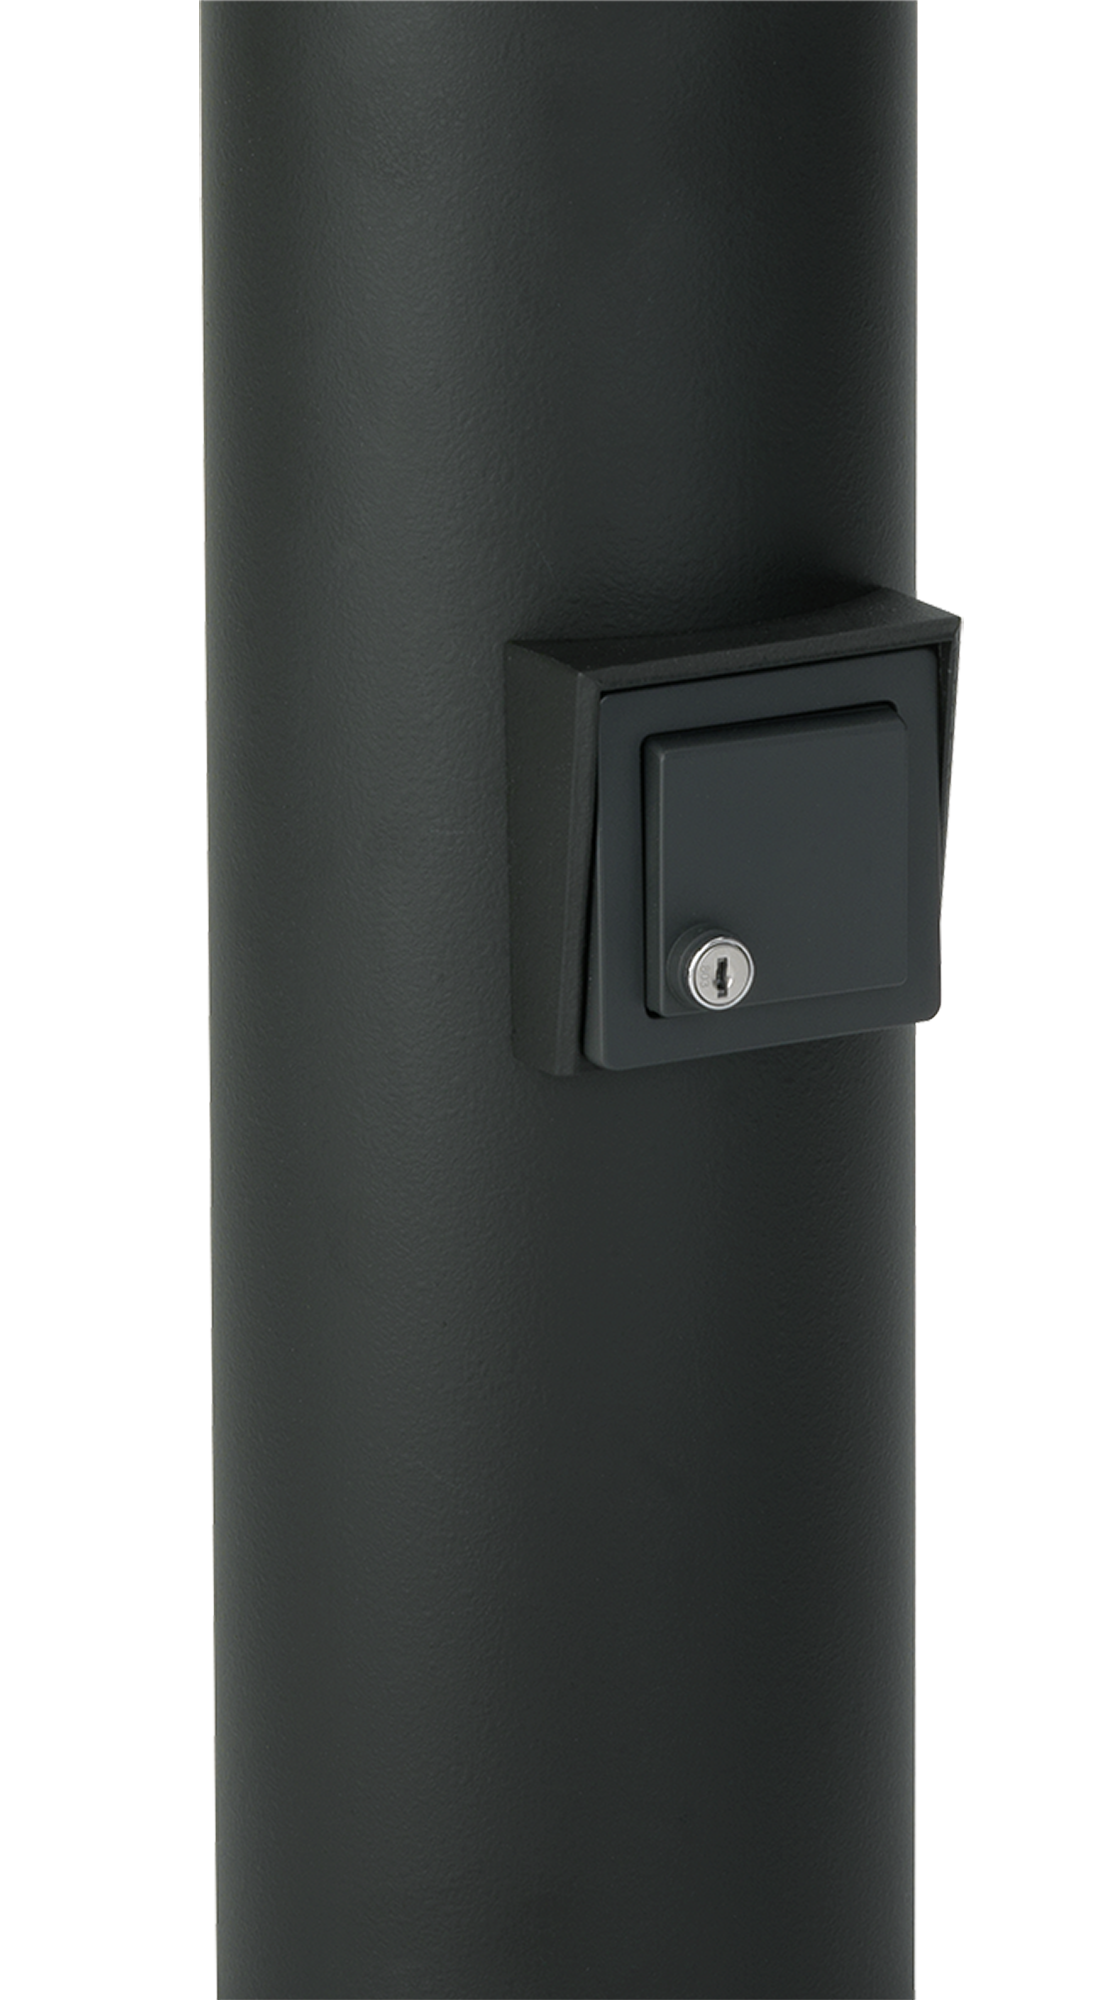 Albert LeuchtenEinbaugehäuse mit abschließbarer Schutzkontaktsteckdose IP44 / D - Typ F, für Pollerleuchten aus Aluminium mit d= 150 mm